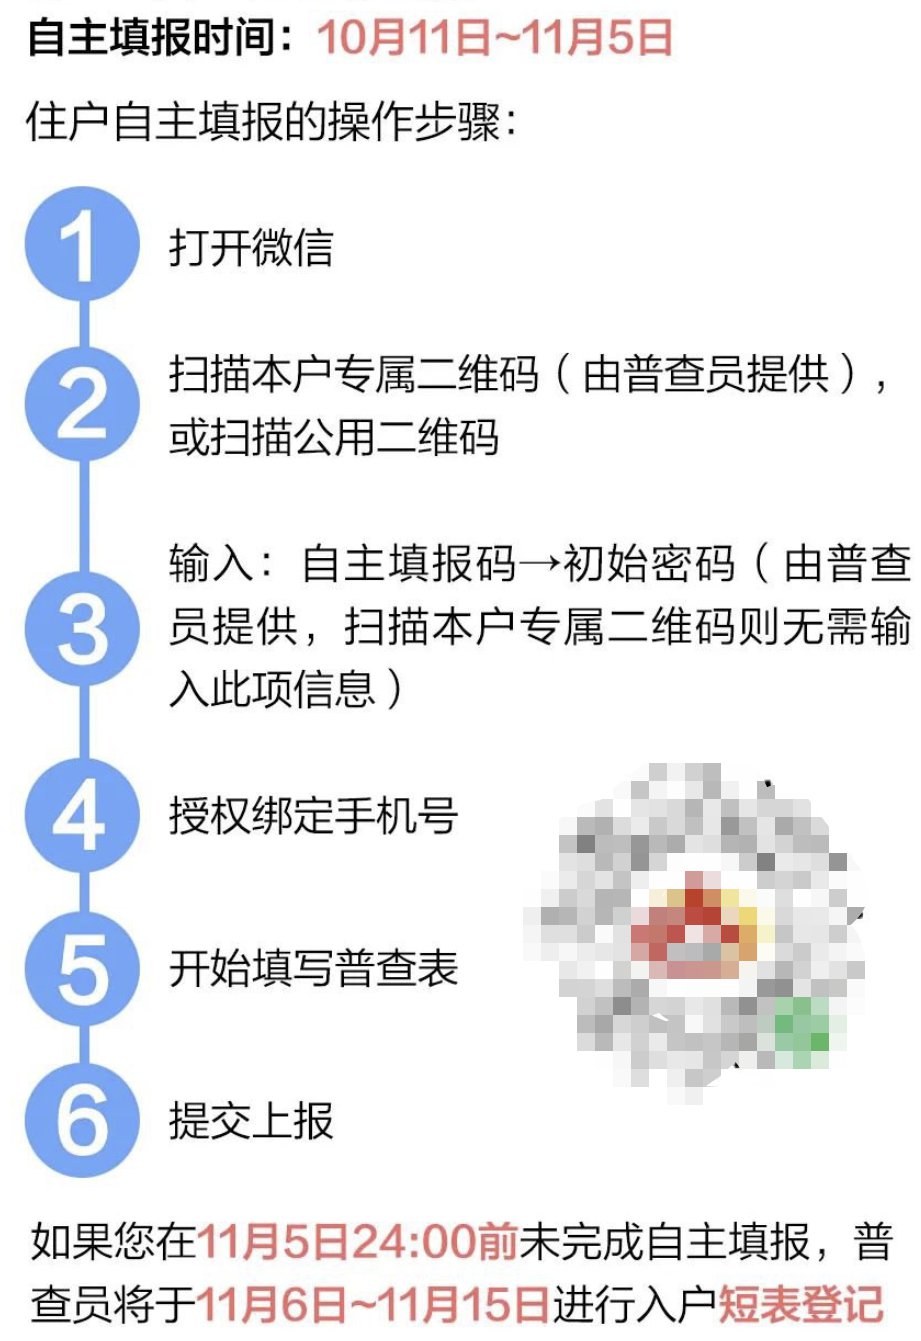 2020北京人口普查自主填报码怎么获得?